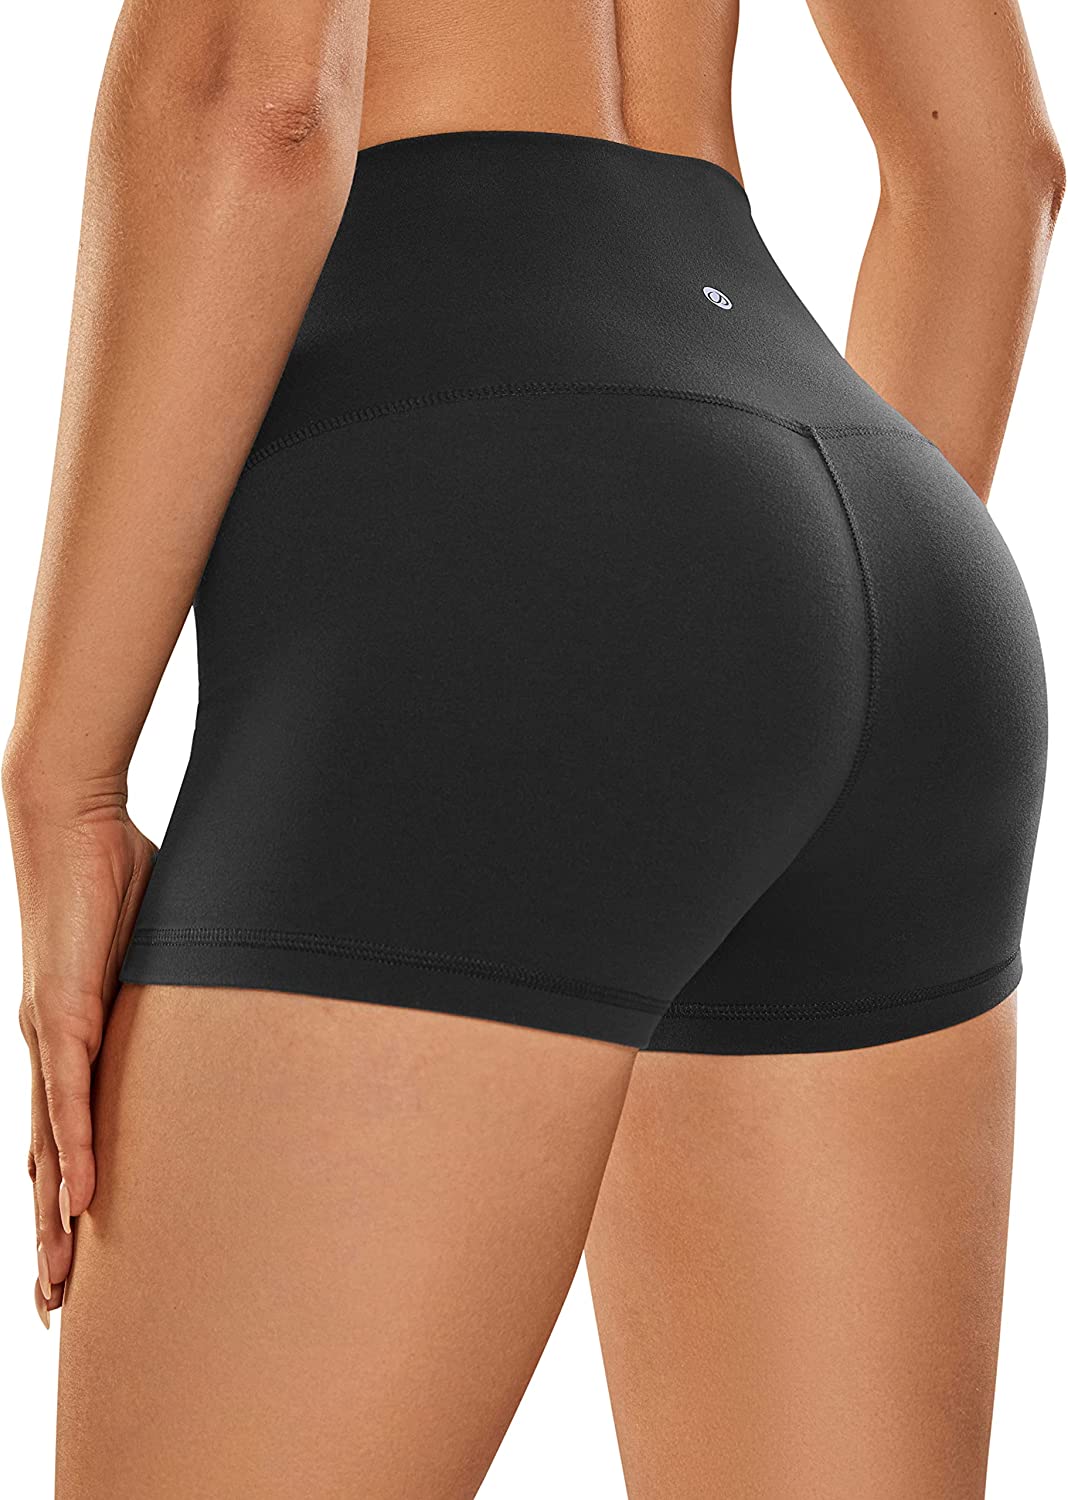 CAMPSNAIL 4 Pack Biker Shorts for Women – 8 High Waist Tummy